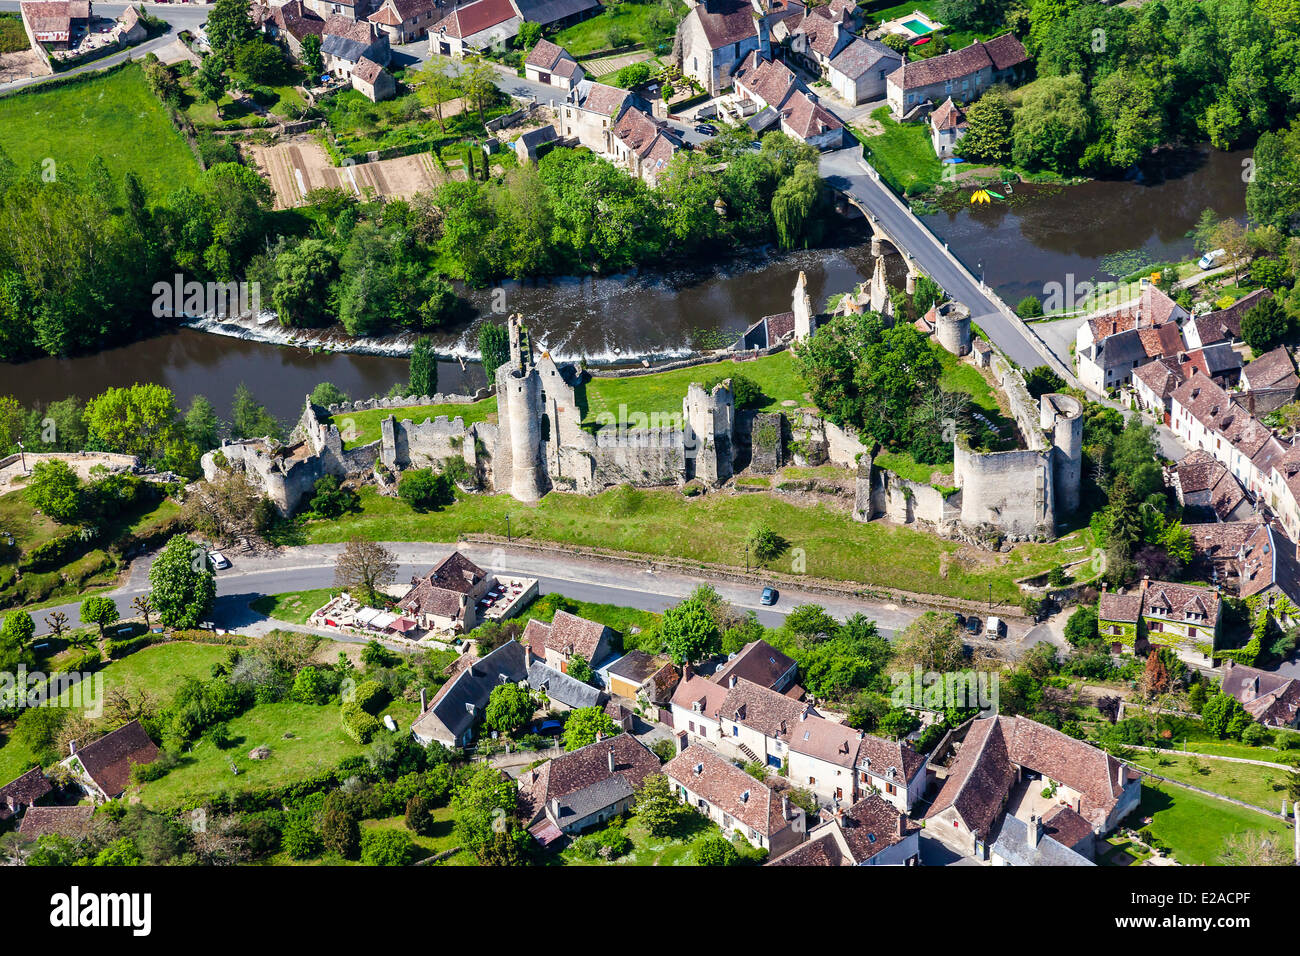 France, Vienne, angles sur l'Anglin, intitulée Les Plus Beaux Villages de France (Les Plus Beaux Villages de France), le Banque D'Images